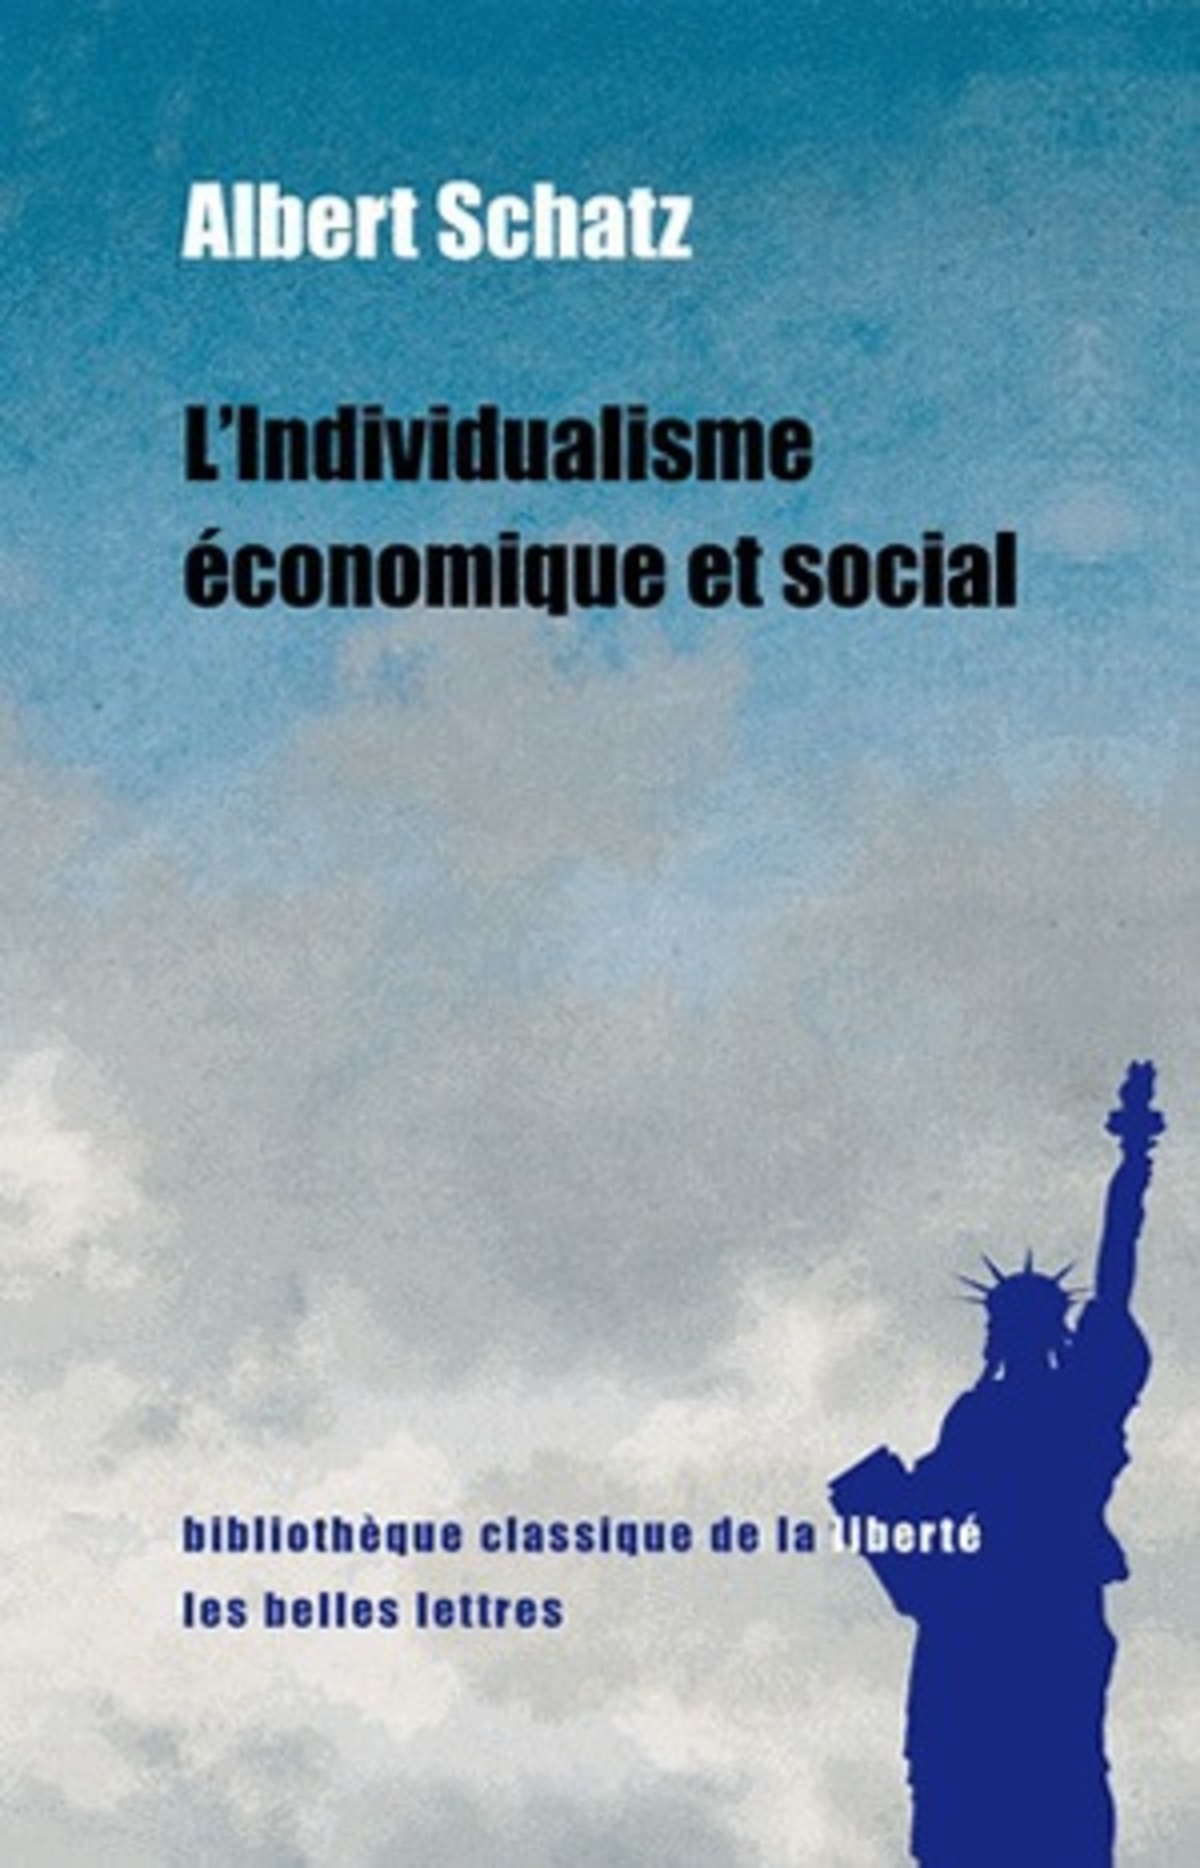 L'Individualisme économique et social